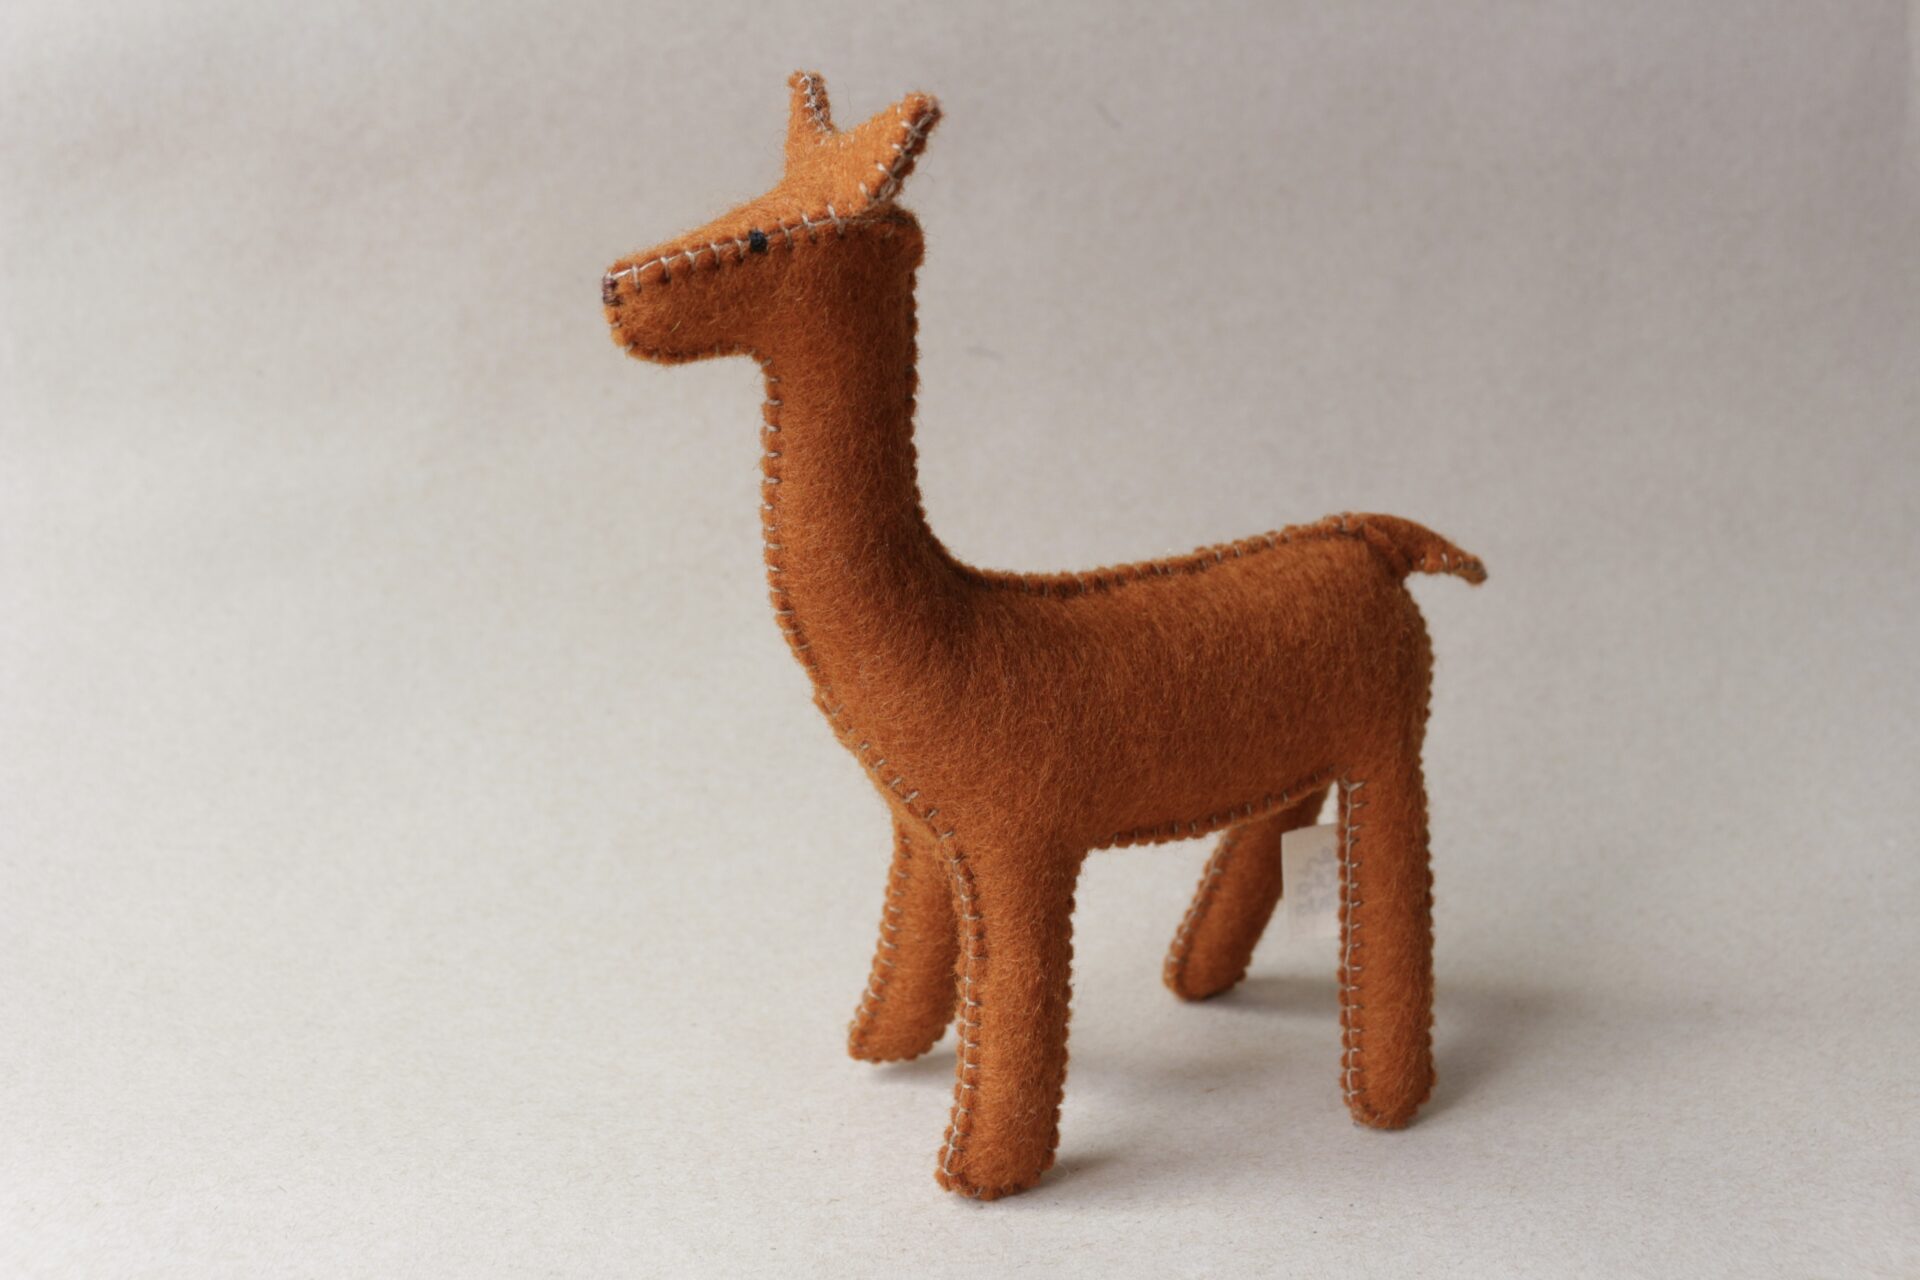 Deer figurine in oeko-tex 100 wool felt